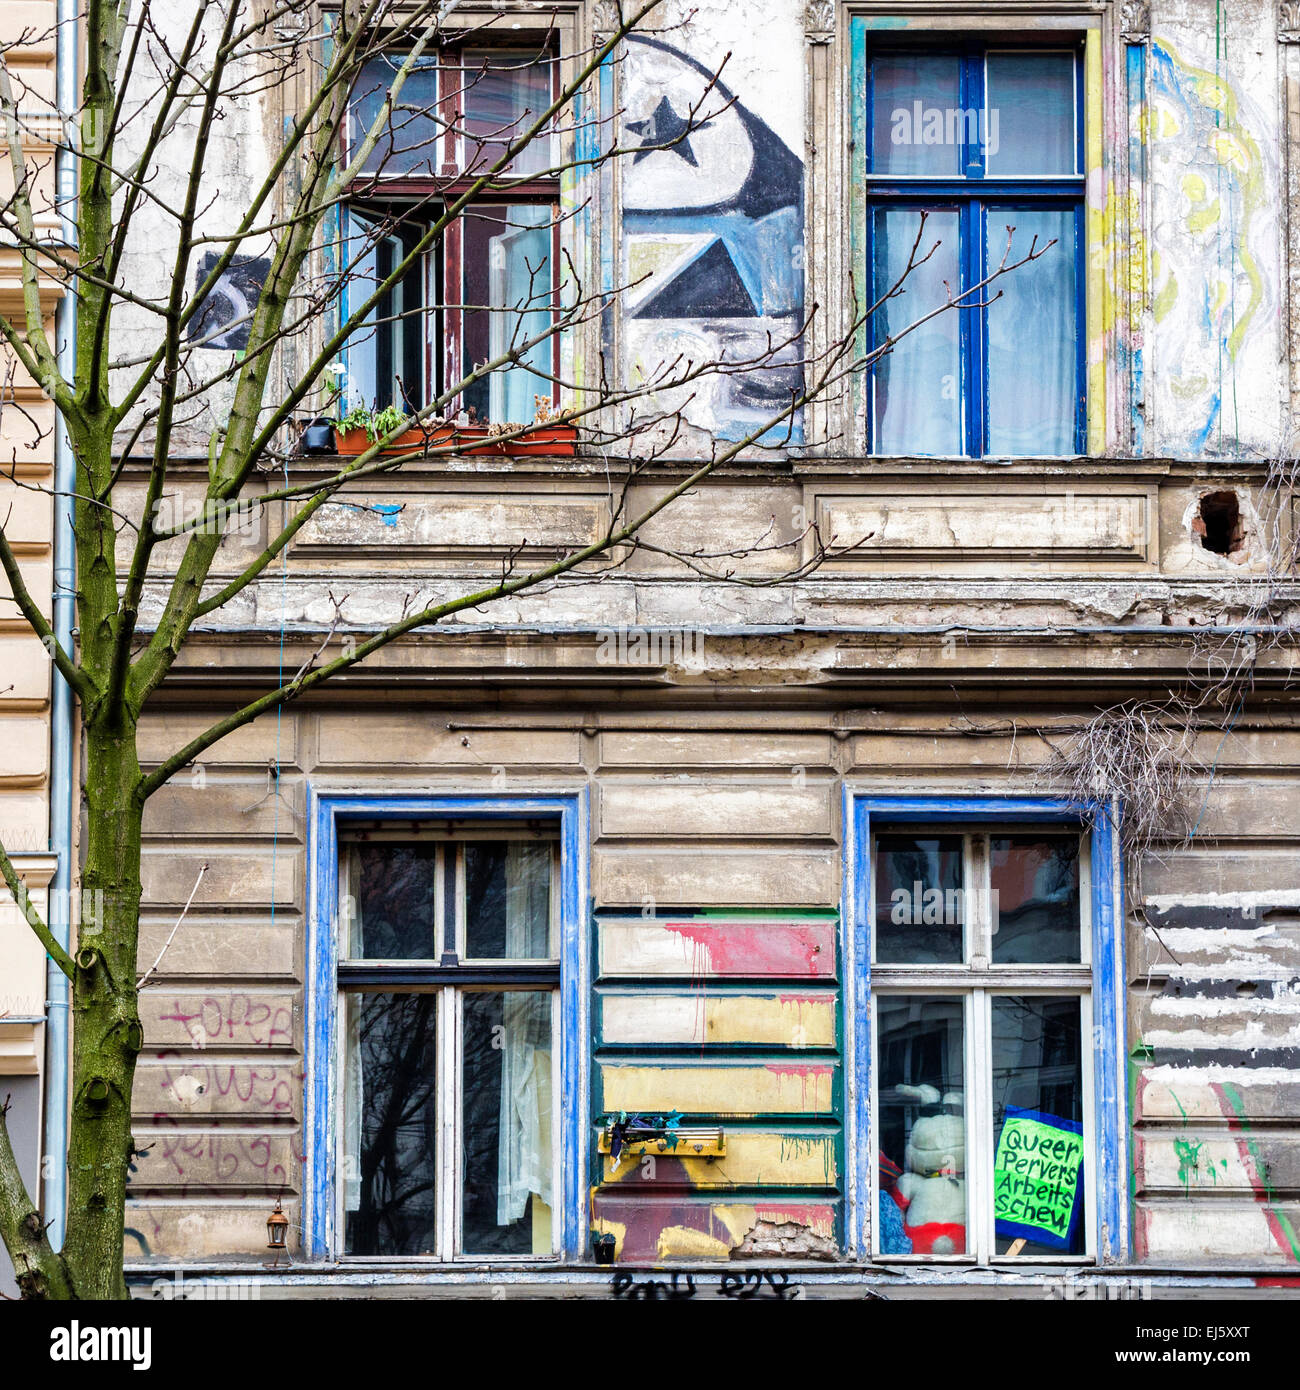 Kastanienallee 86, KA-86, ancien squat extérieur, façade, fenêtres et graffiti, Mitte, Berlin Banque D'Images